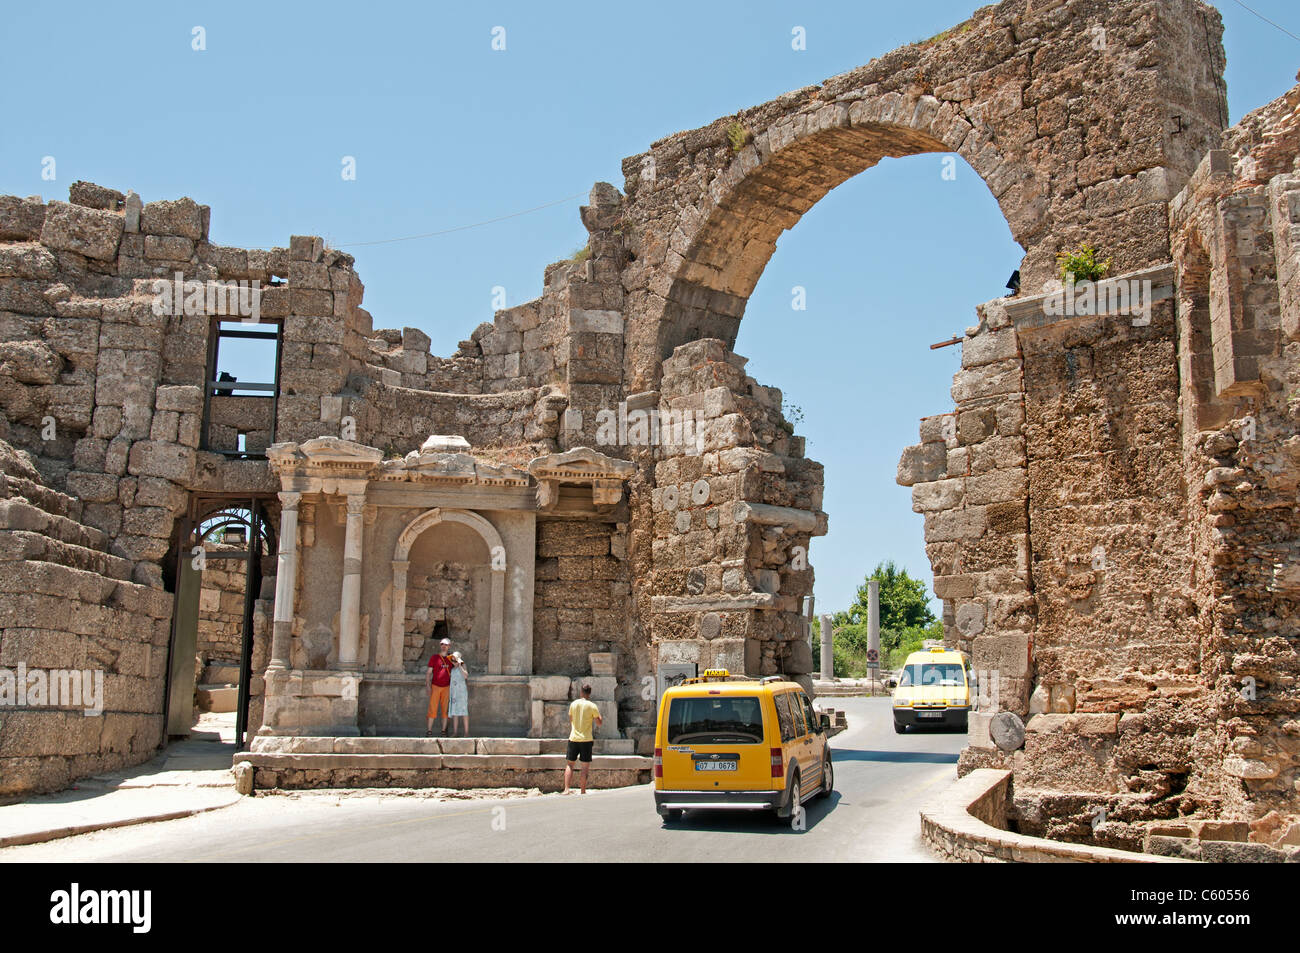 Side Turchia rovine Romane Arch archeologia della città Foto Stock